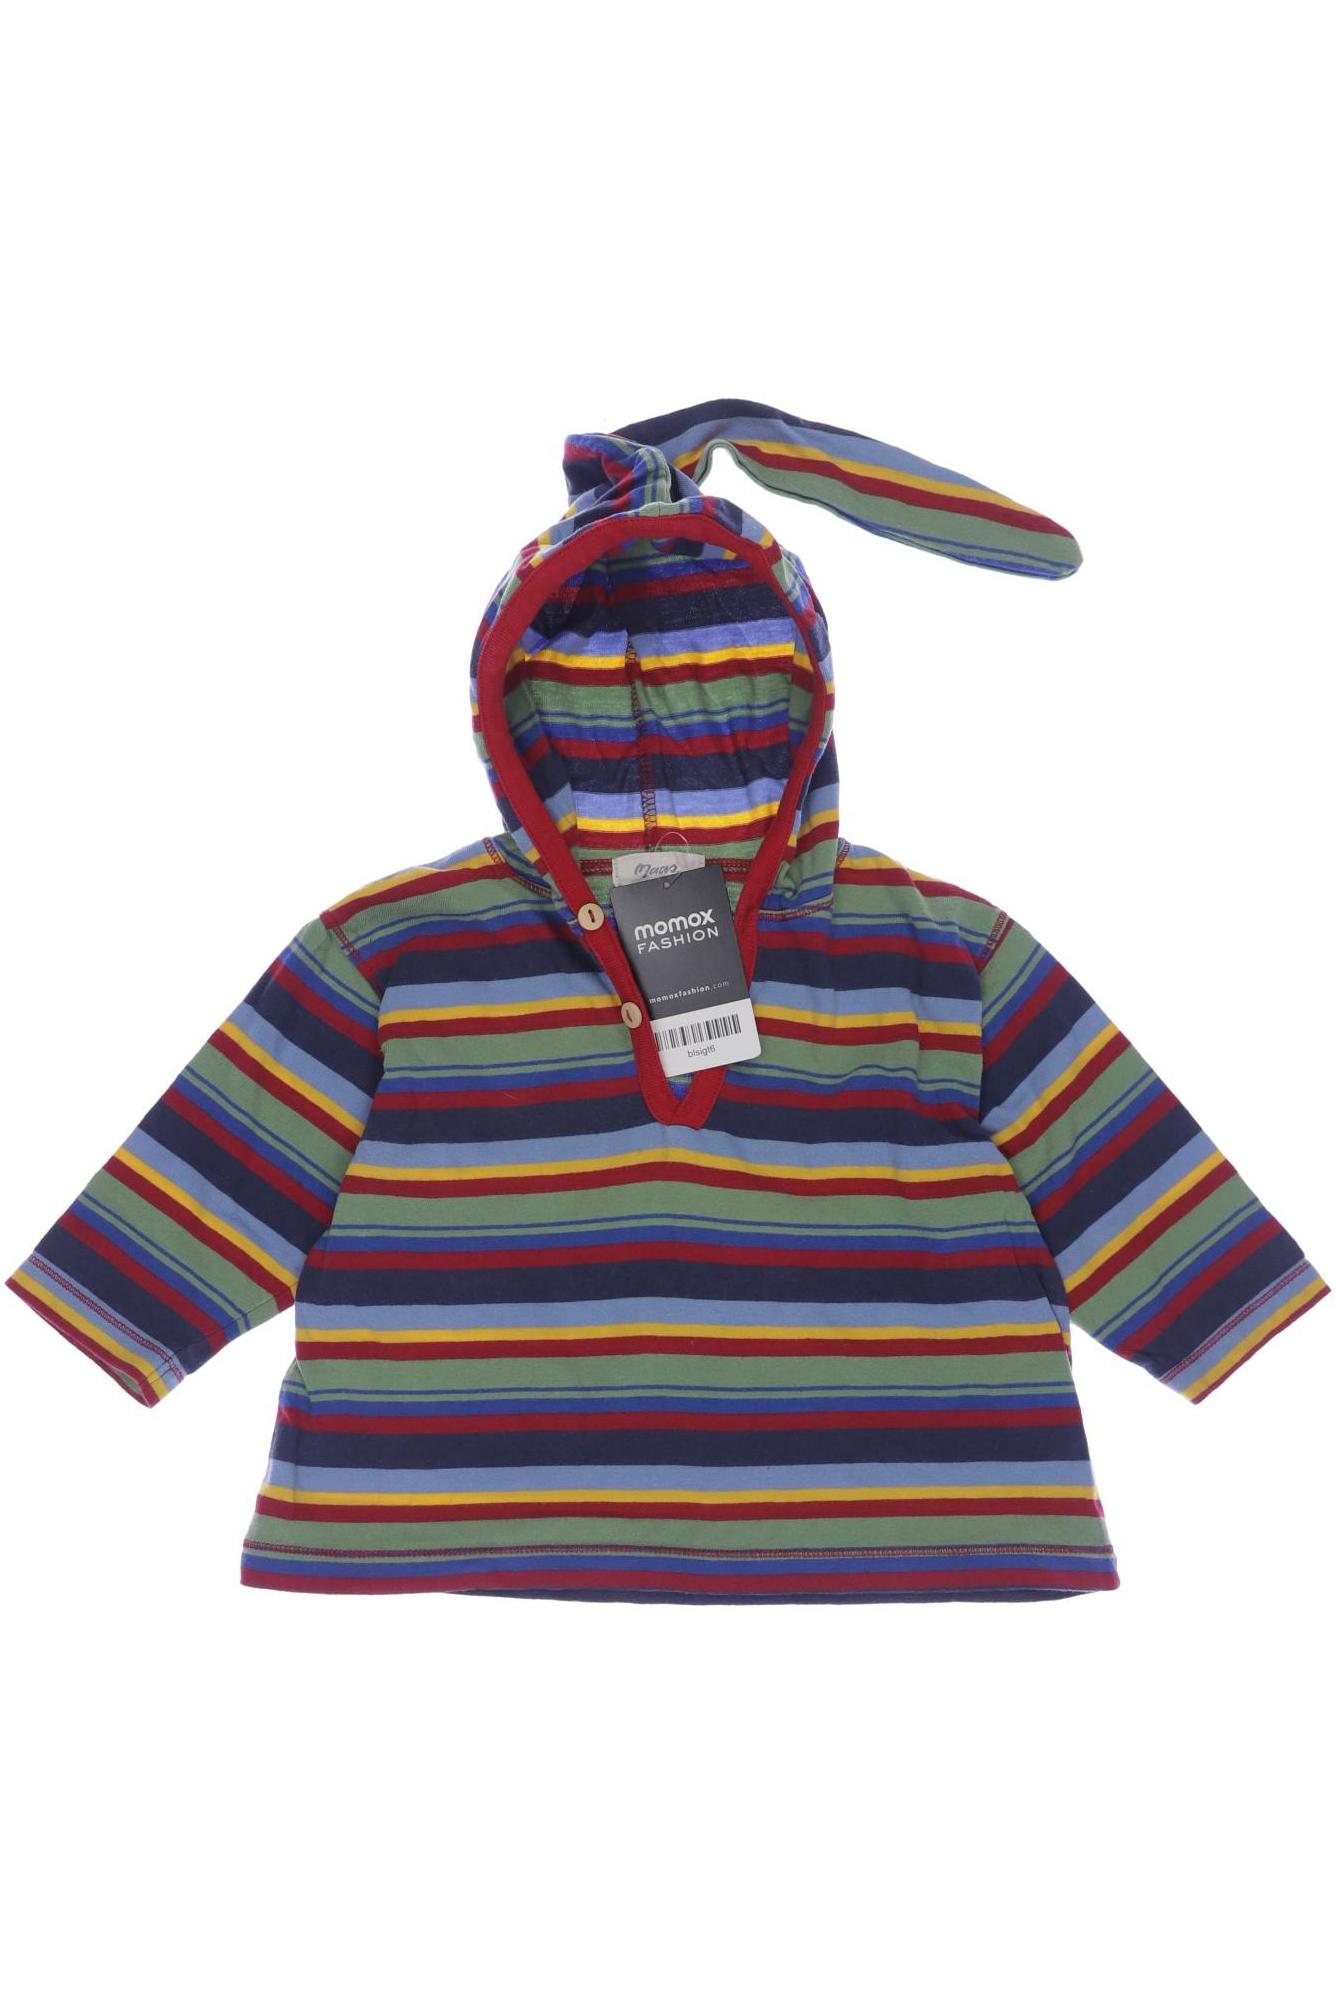 Maas Damen Hoodies & Sweater, mehrfarbig, Gr. 86 von Maas